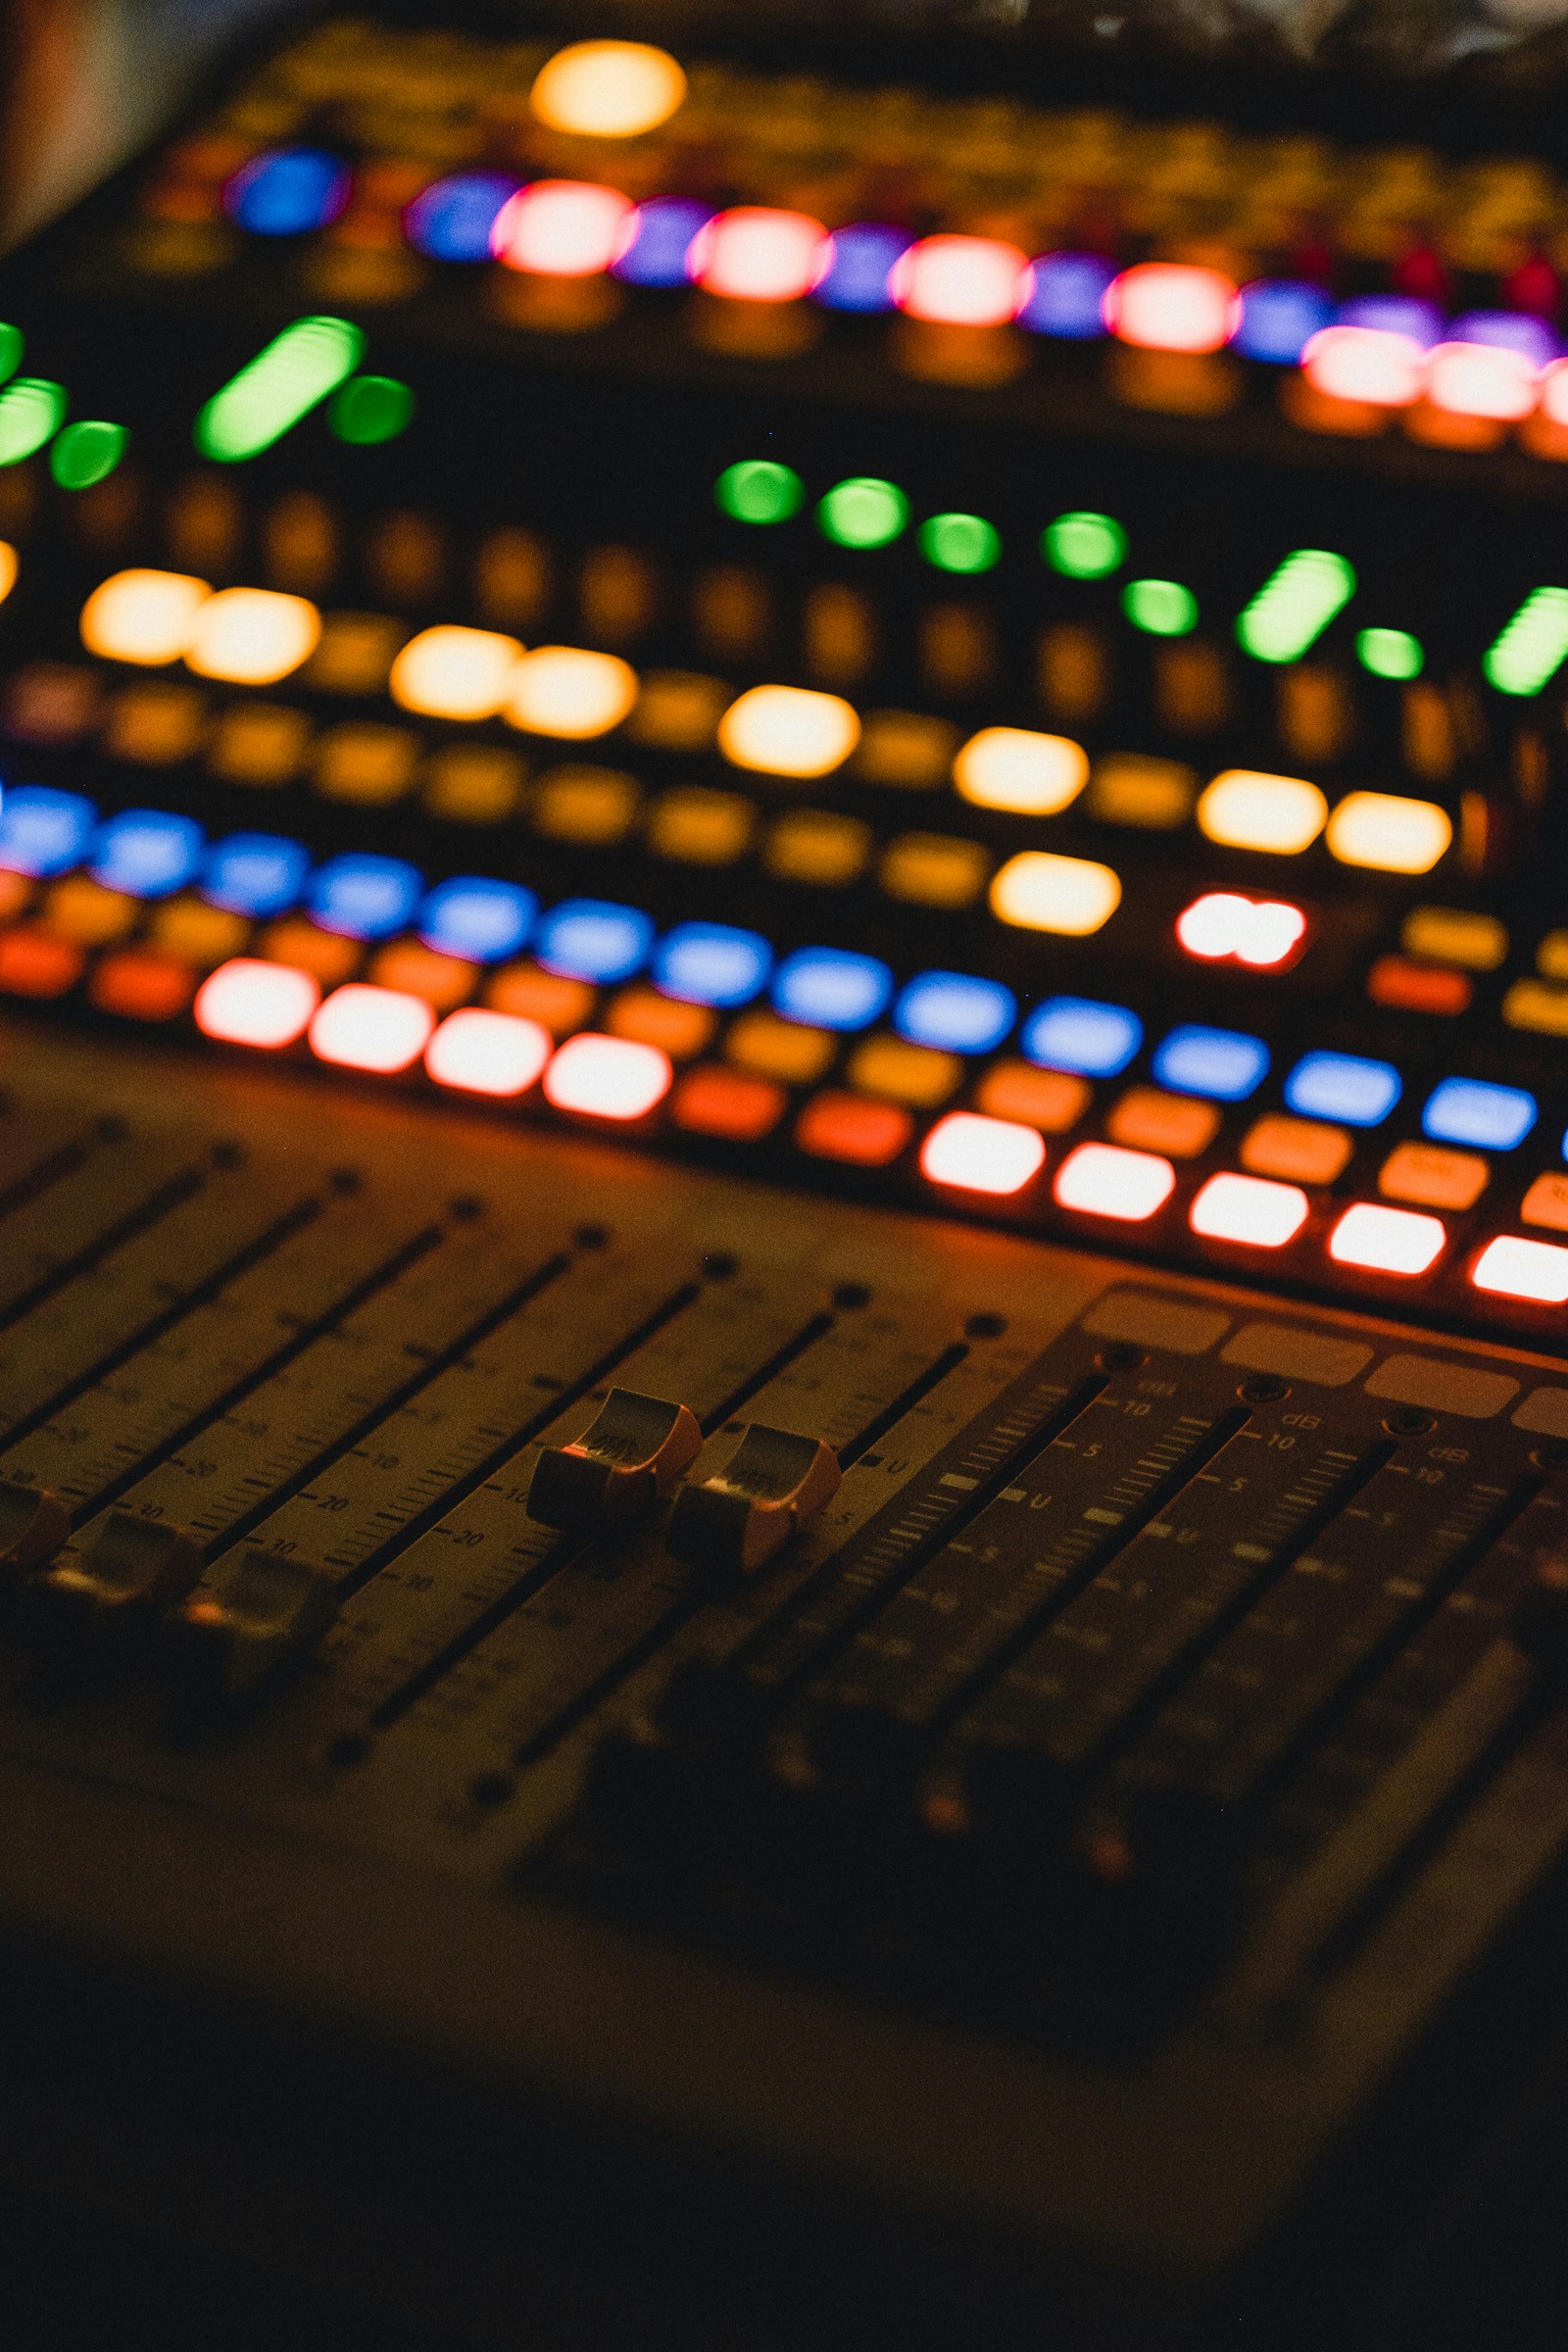 Steinberg Audio Interfaces: Een Topkeuze Voor Podcasters